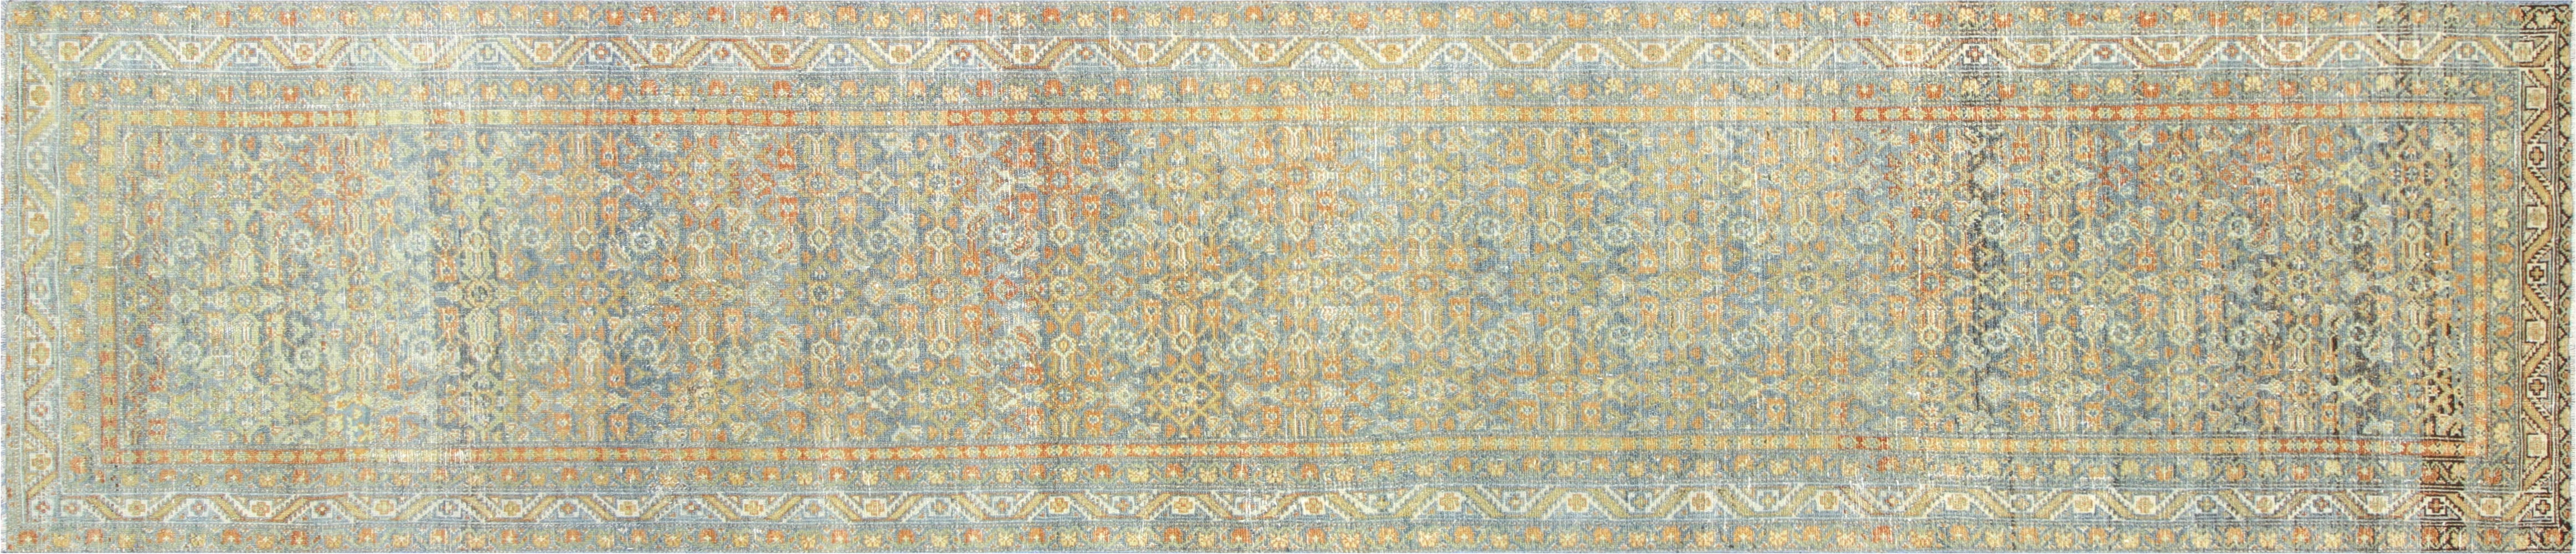 Antique Persian Melayer Runner - 3'3" x 15'7"